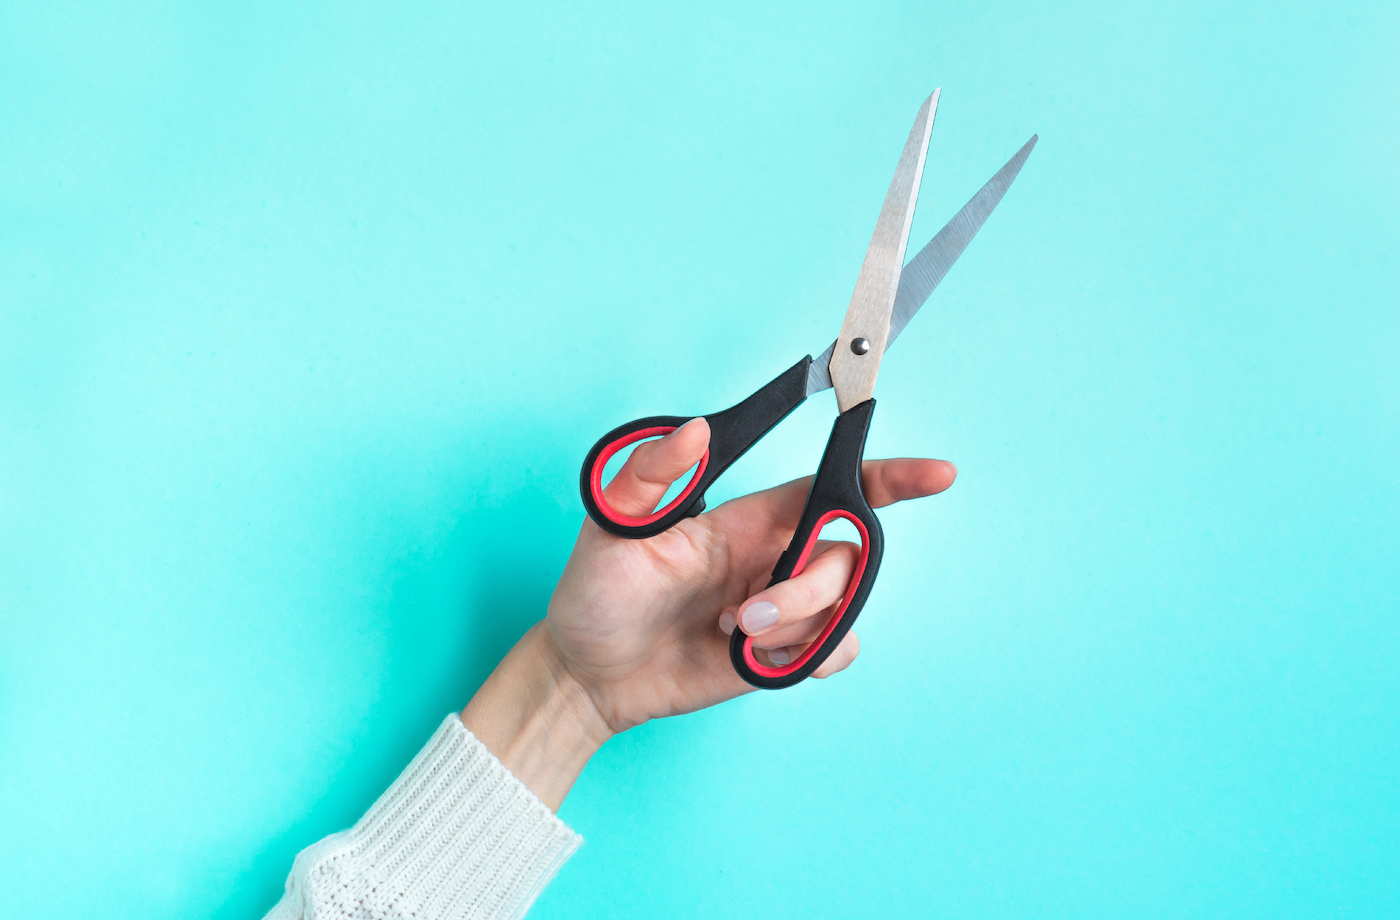 hair scissors vs regular scissors